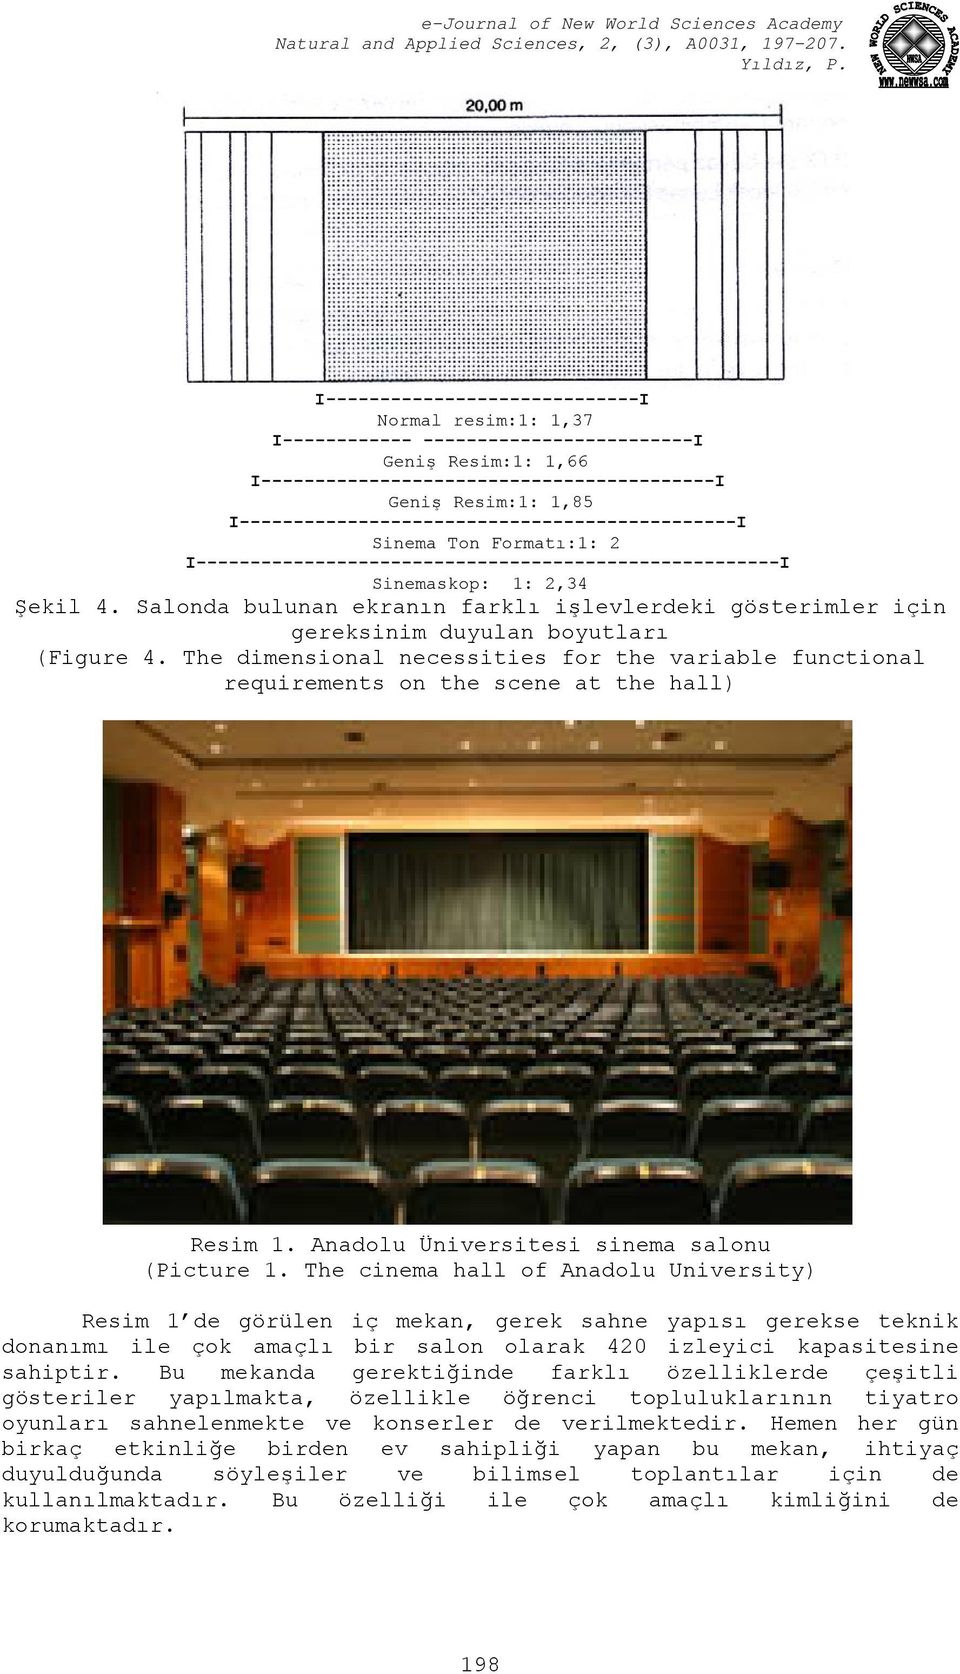 Salonda bulunan ekranın farklı işlevlerdeki gösterimler için gereksinim duyulan boyutları (Figure 4.